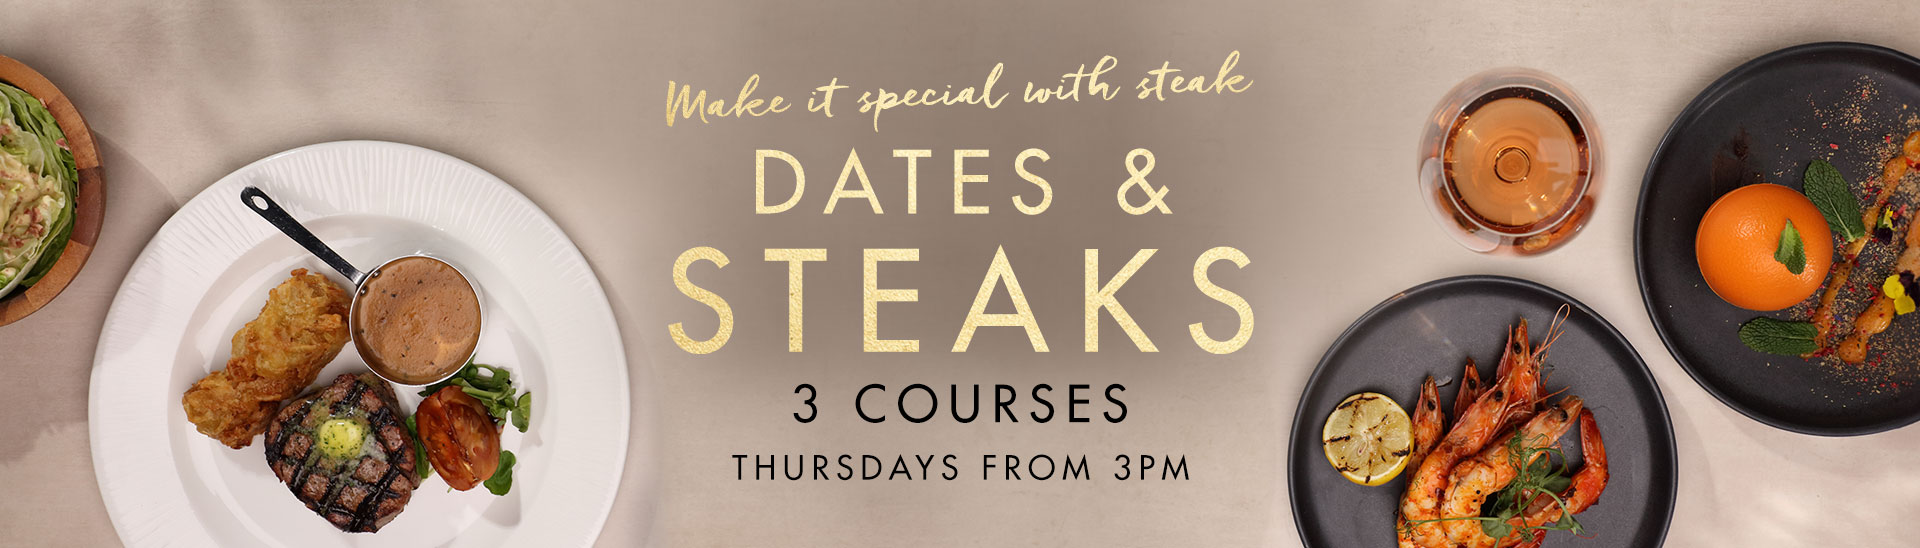 Dates & Steaks at Miller & Carter Talke